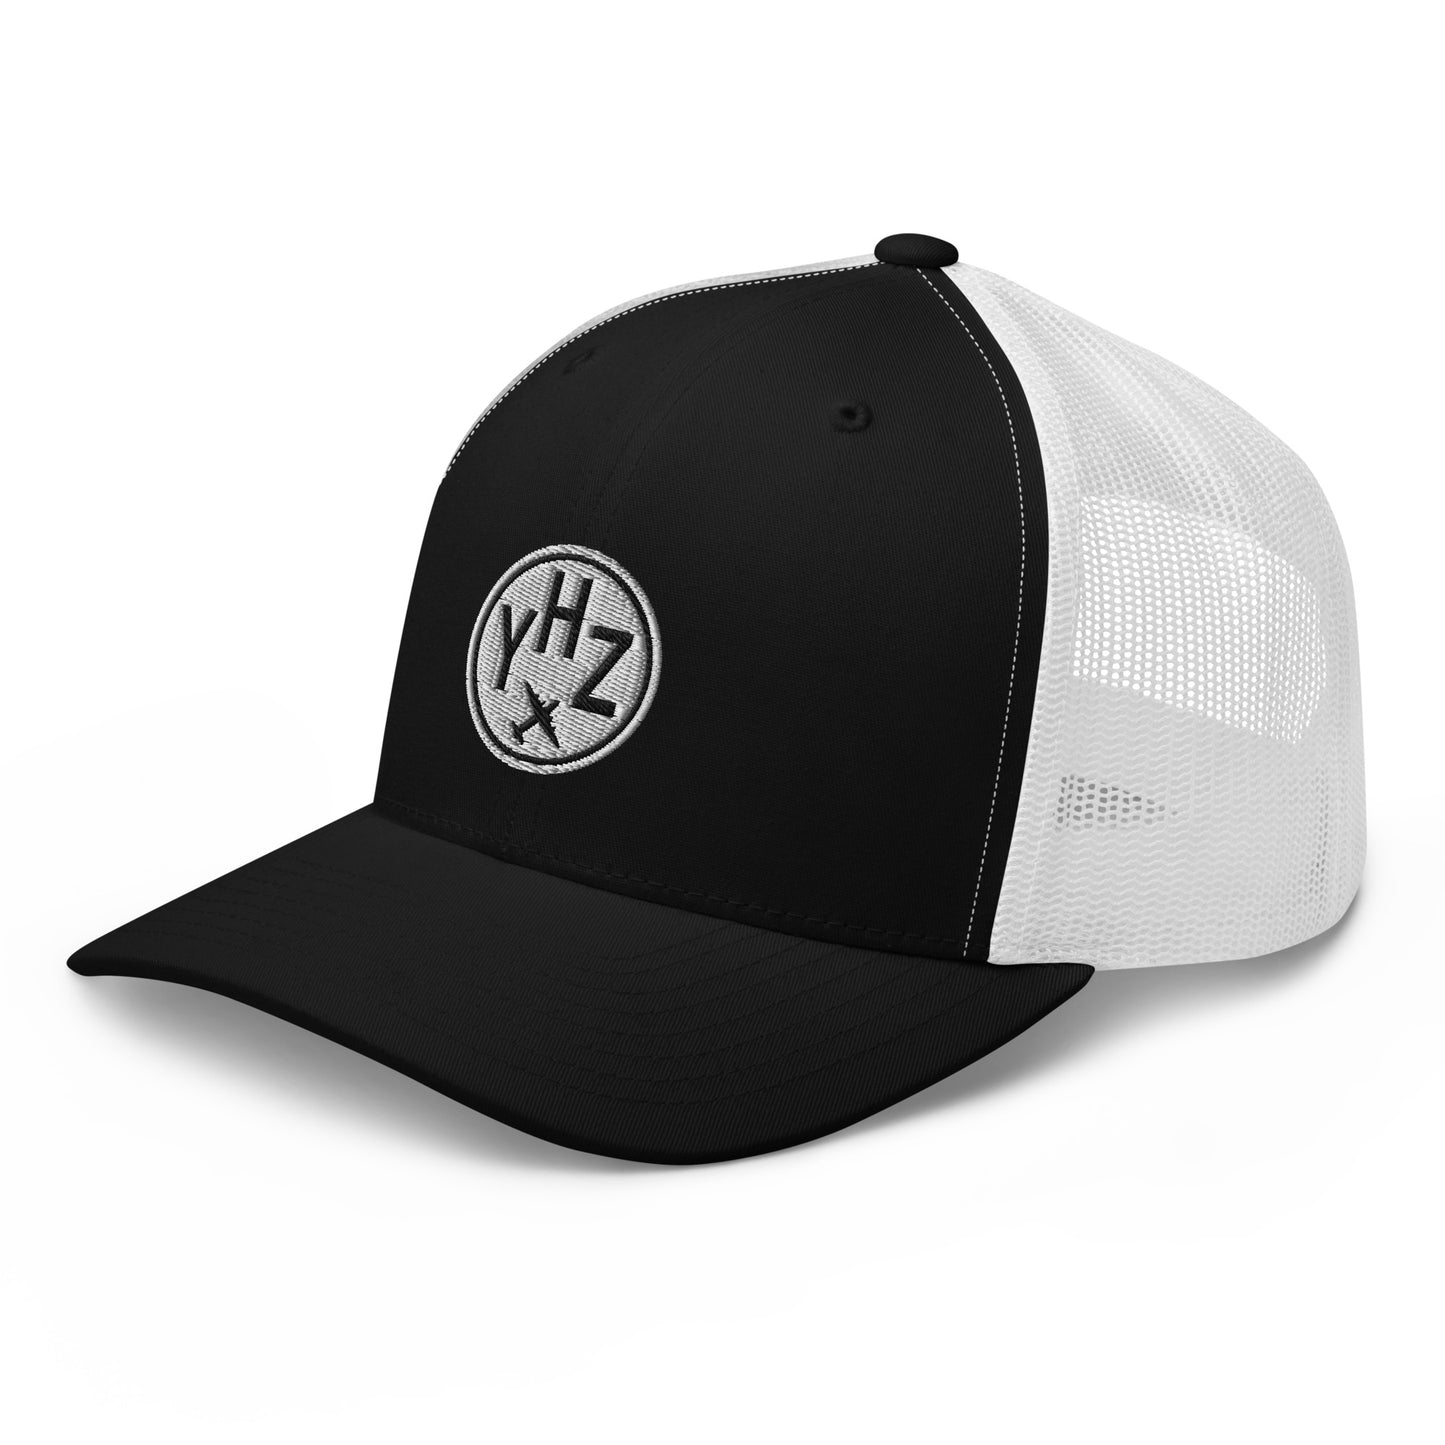 Roundel Trucker Hat - Black & White • YHZ Halifax • YHM Designs - Image 01